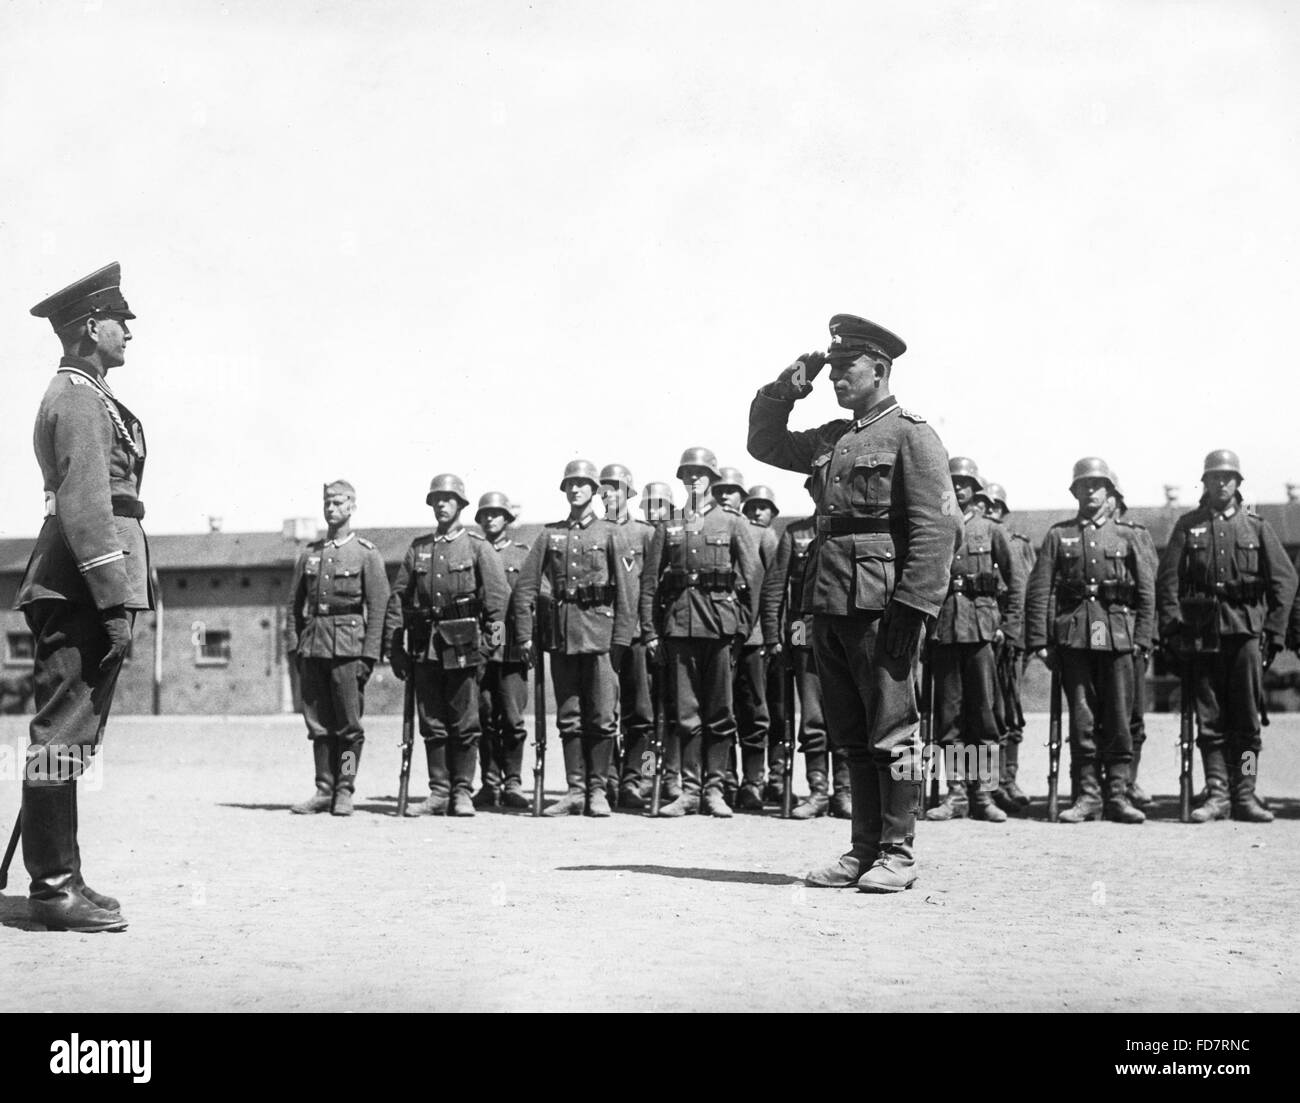 Une division de l'infanterie avant le sergent, 1938 Banque D'Images